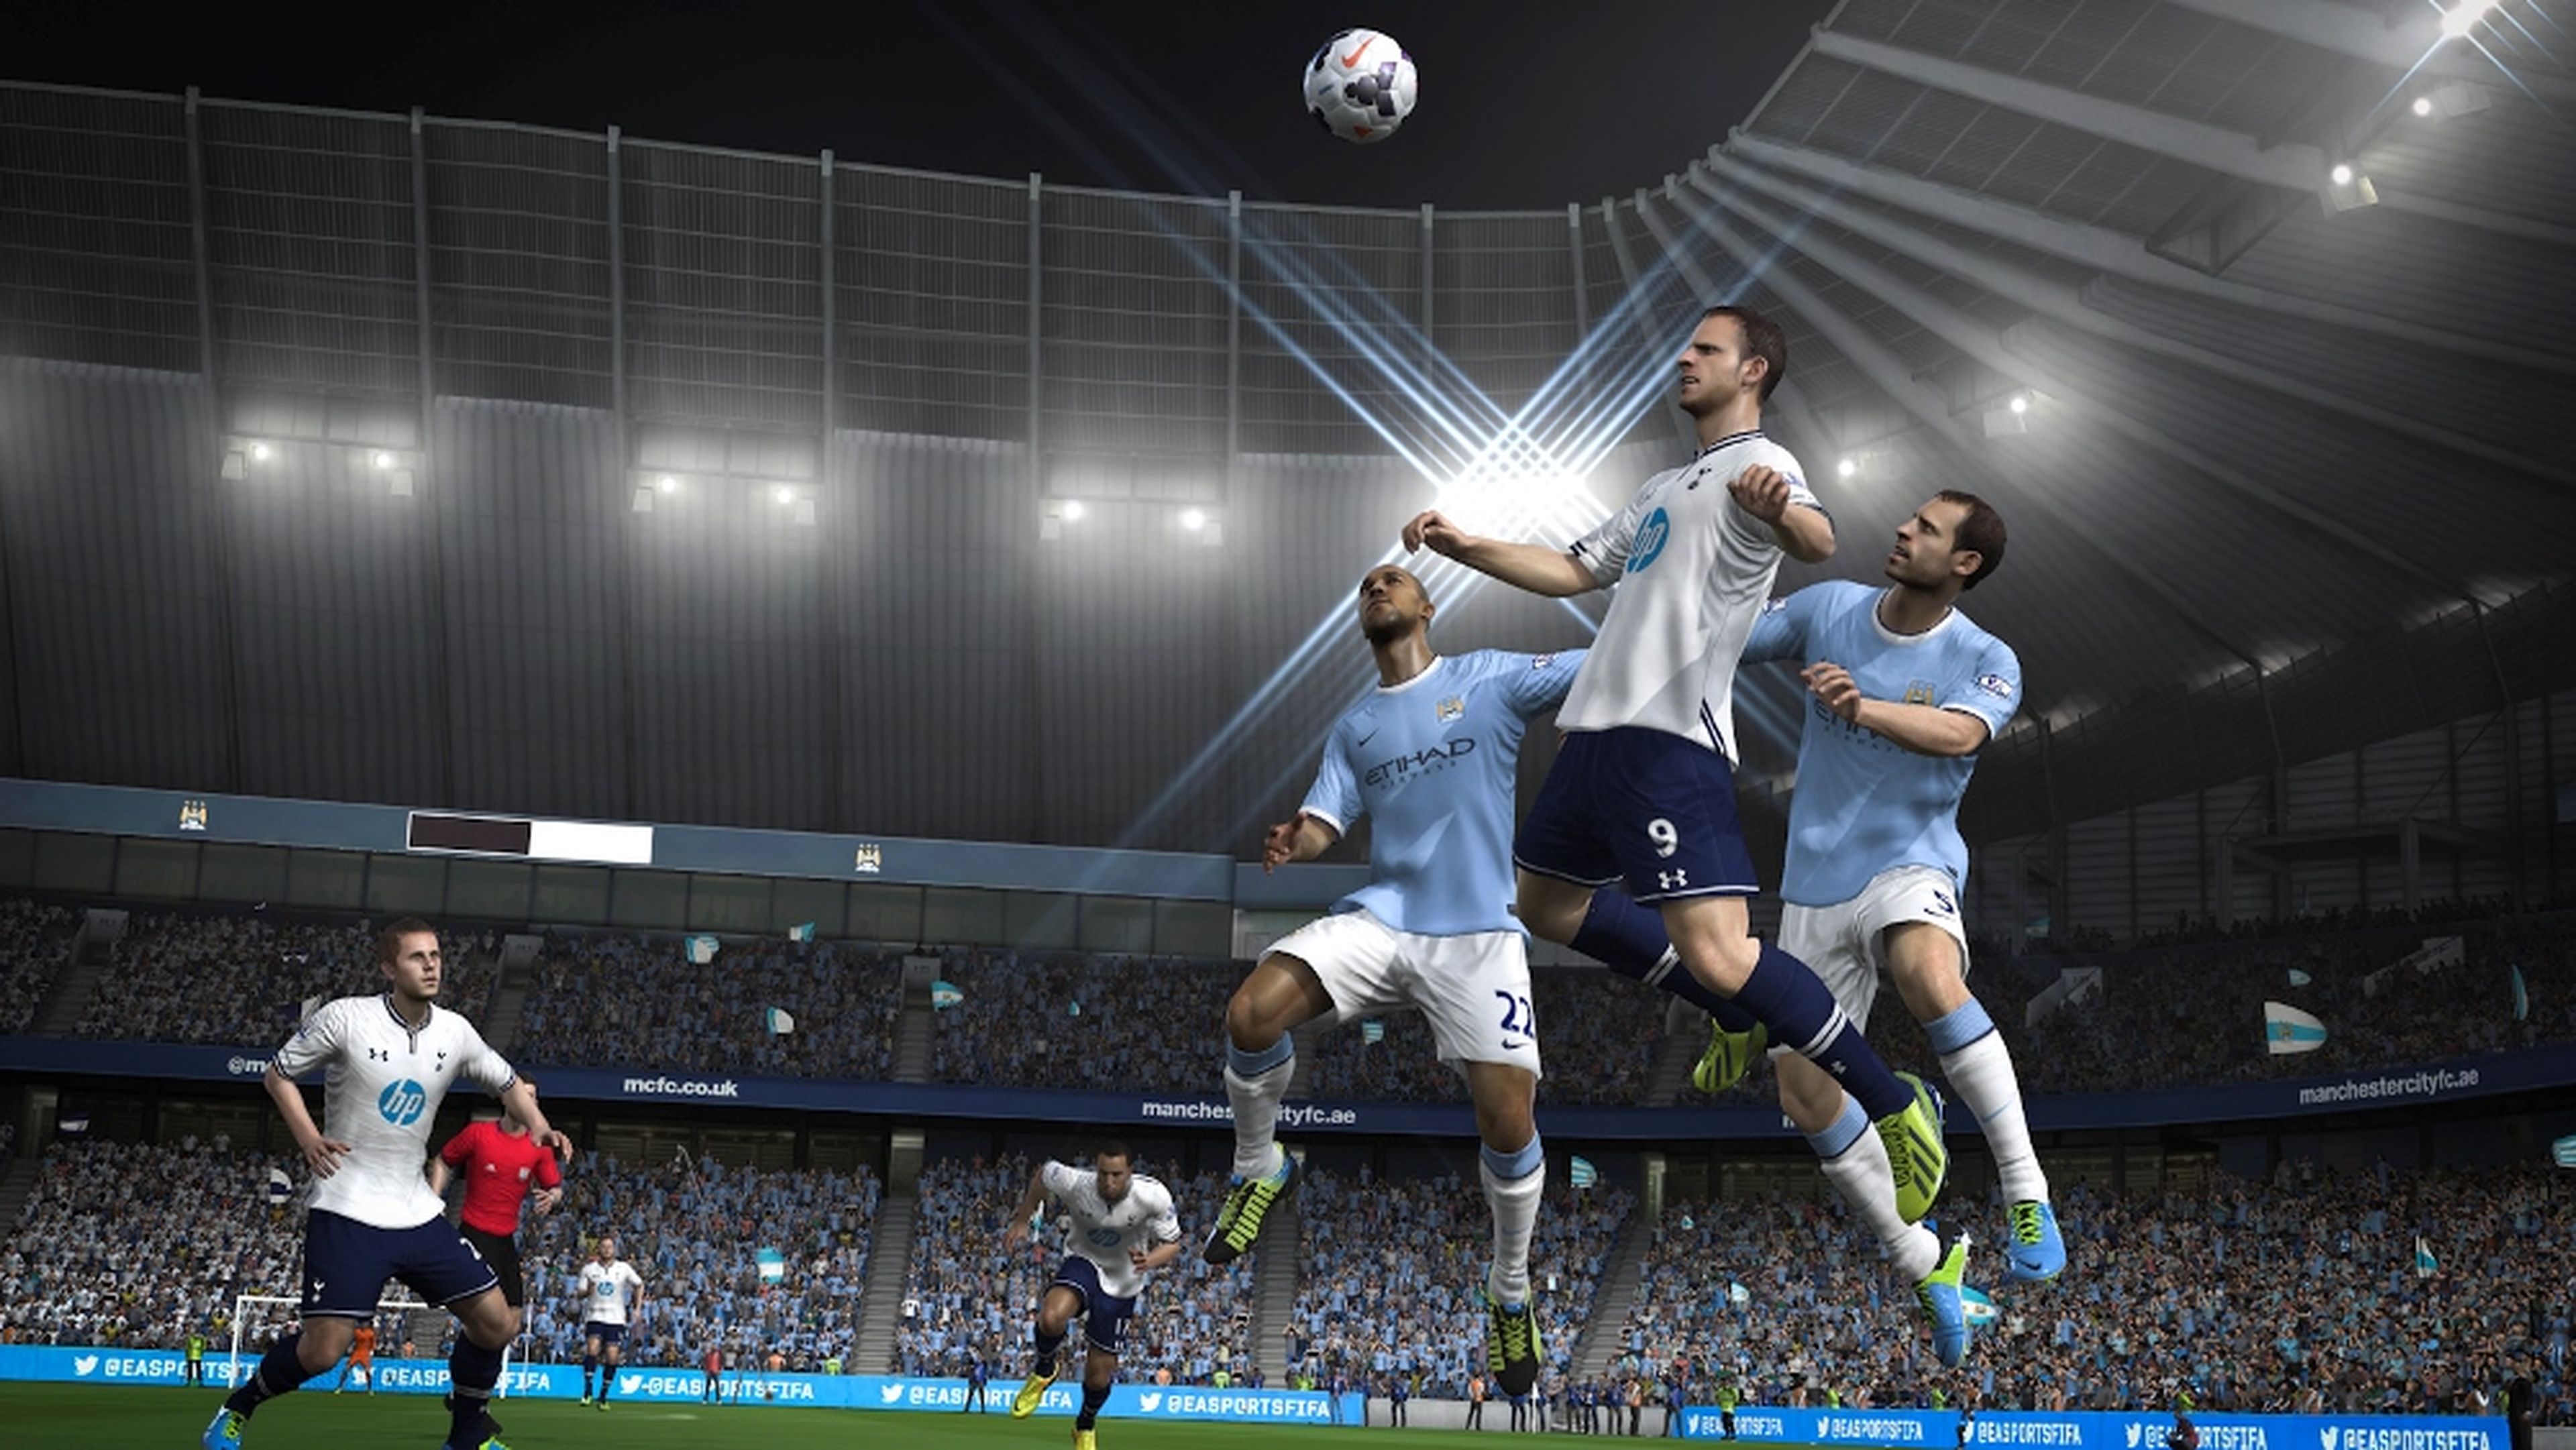 Análisis de FIFA 14 para PS4 y Xbox One